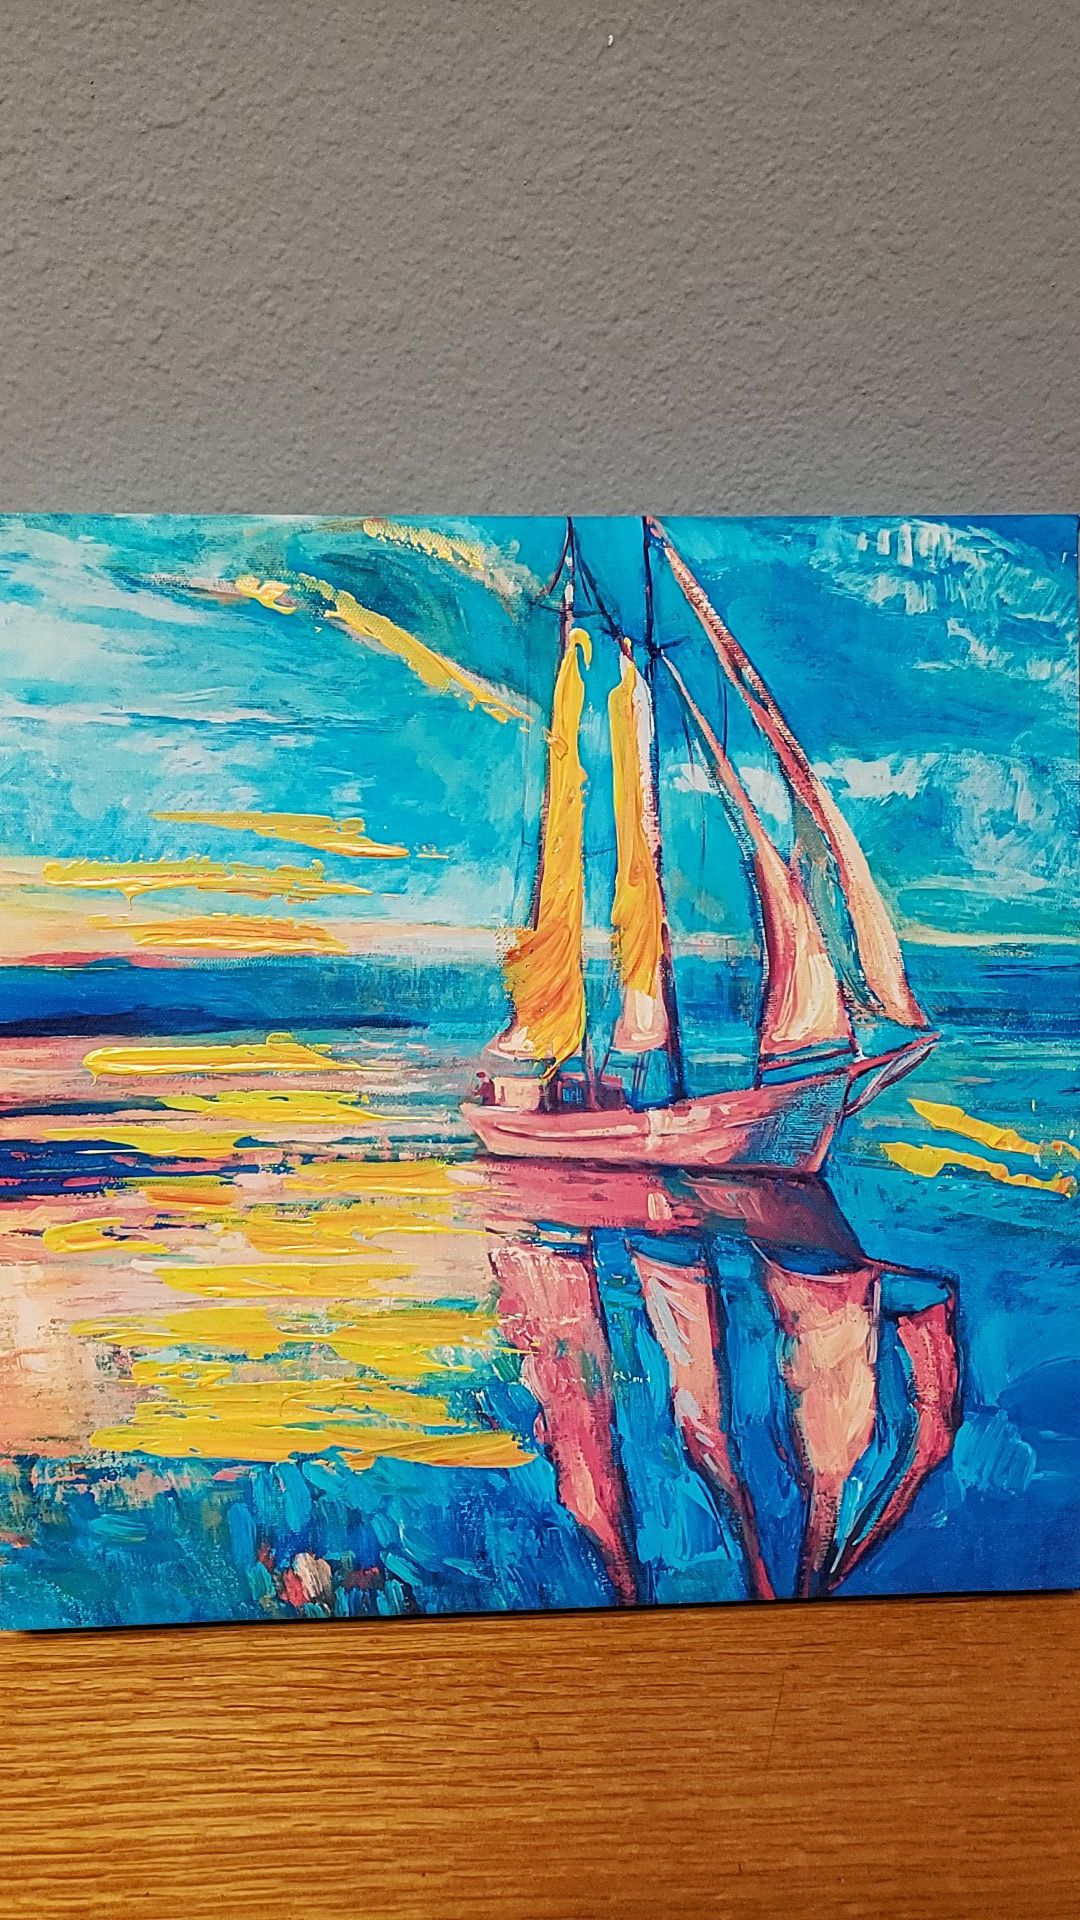 Painted canvas wall art (sailboat)